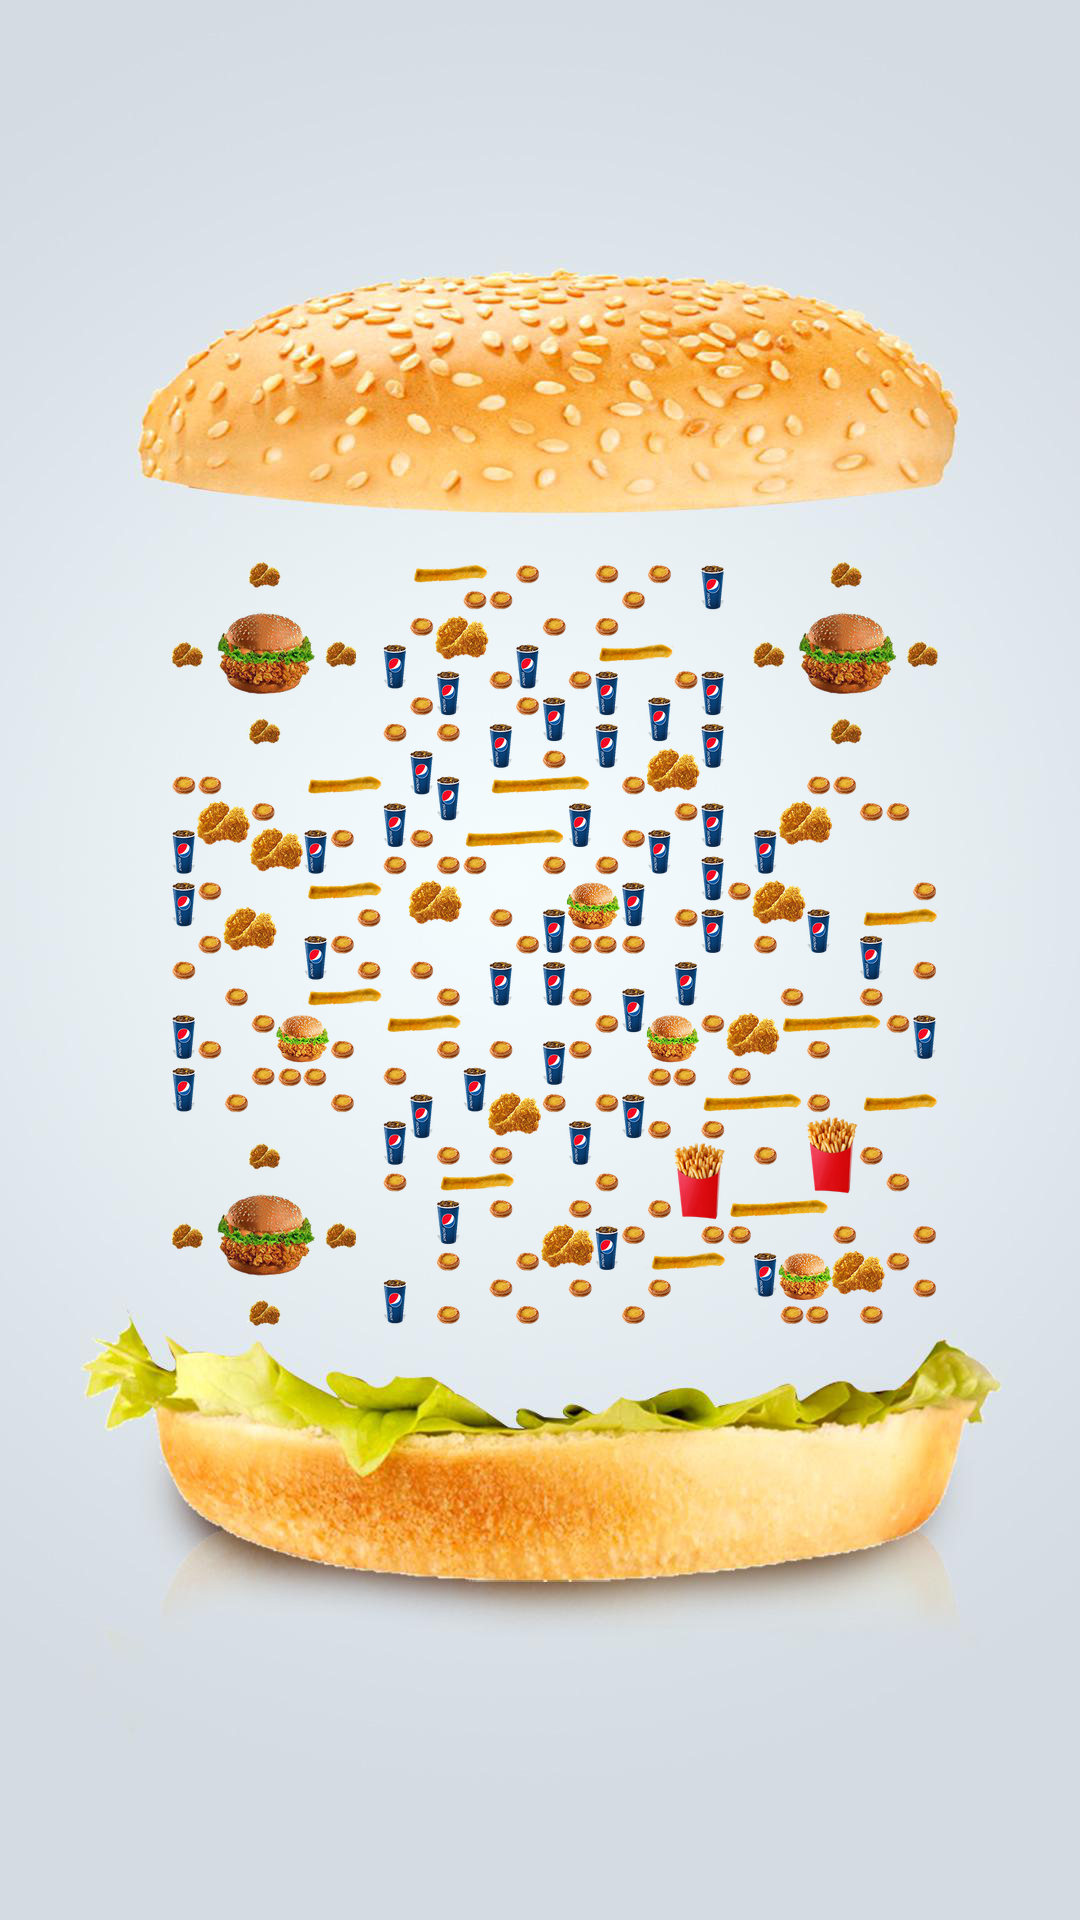 炸鸡汉堡可乐薯条休闲快餐小食叠叠高二维码生成器-平面静态-手机壁纸